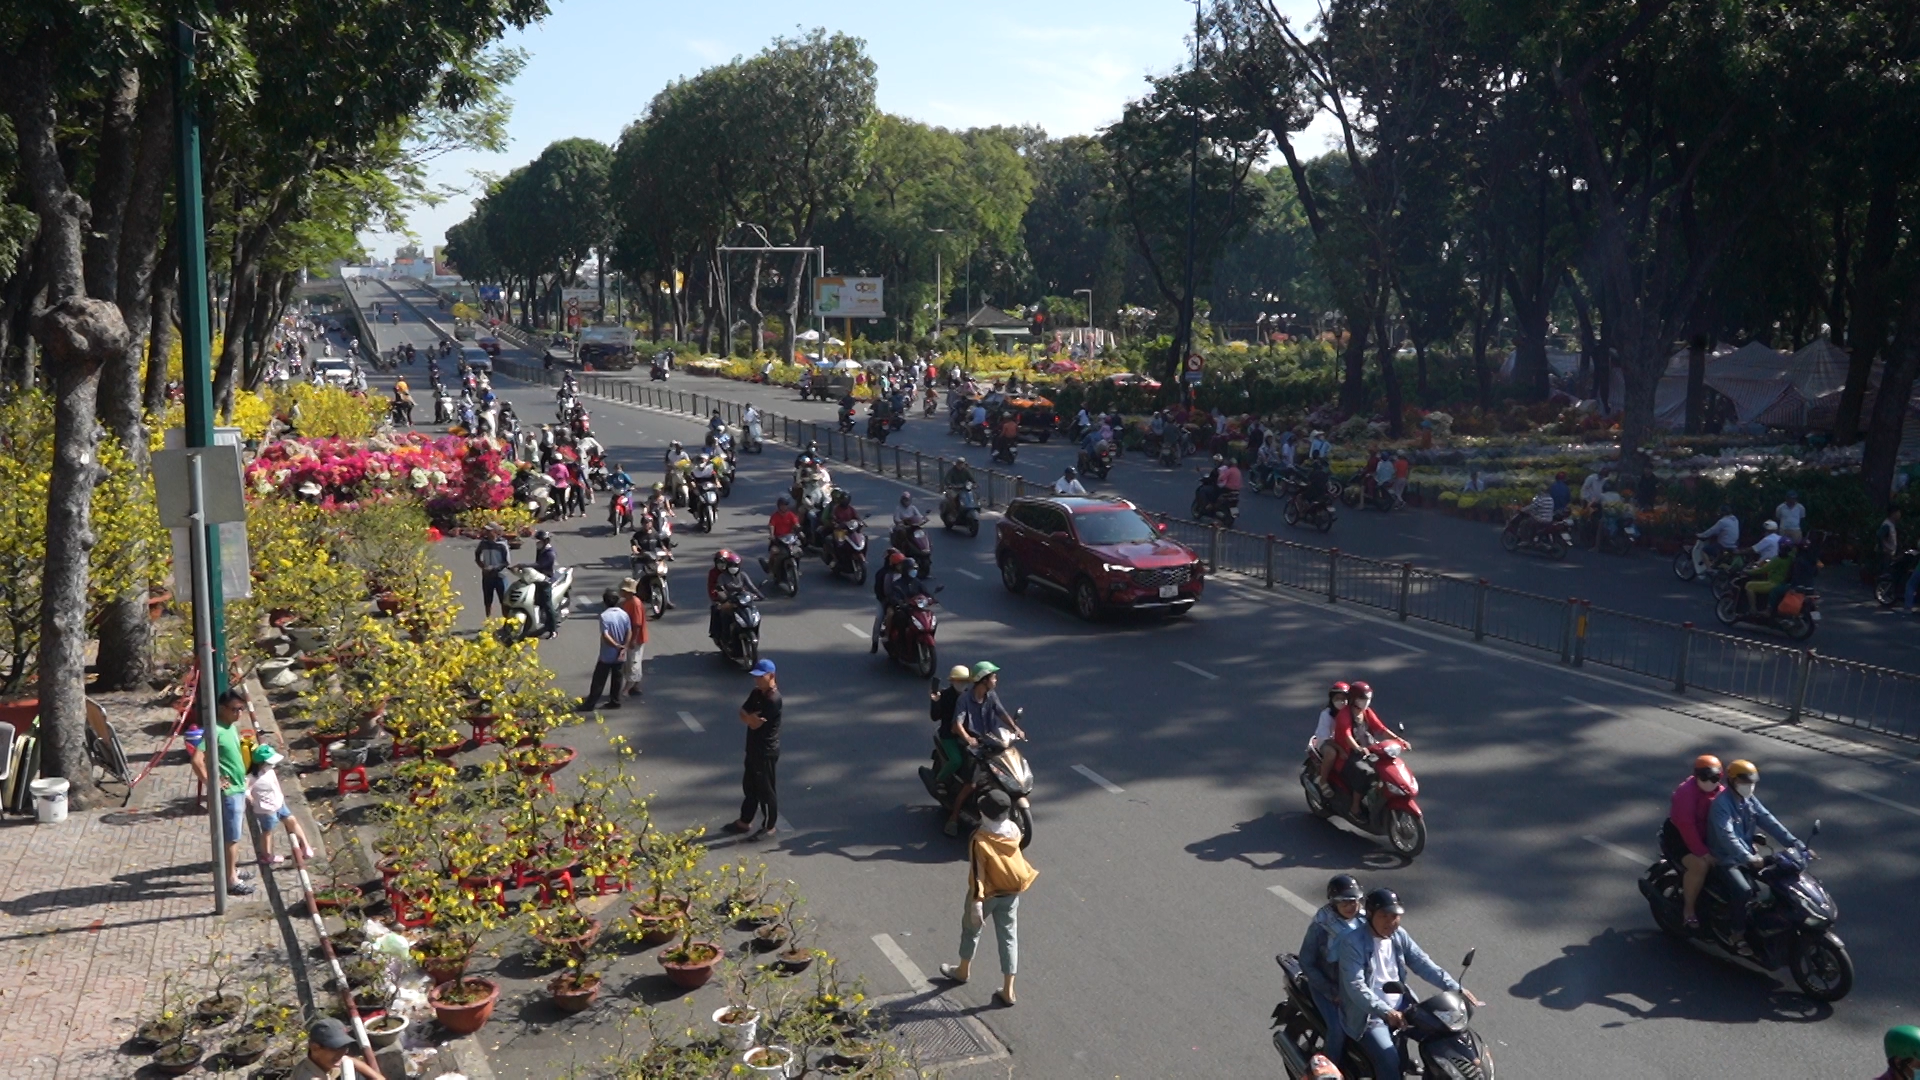 Thành phố Hồ Chí Minh công bố gần 100 chương trình tour khuyến mãi du khách